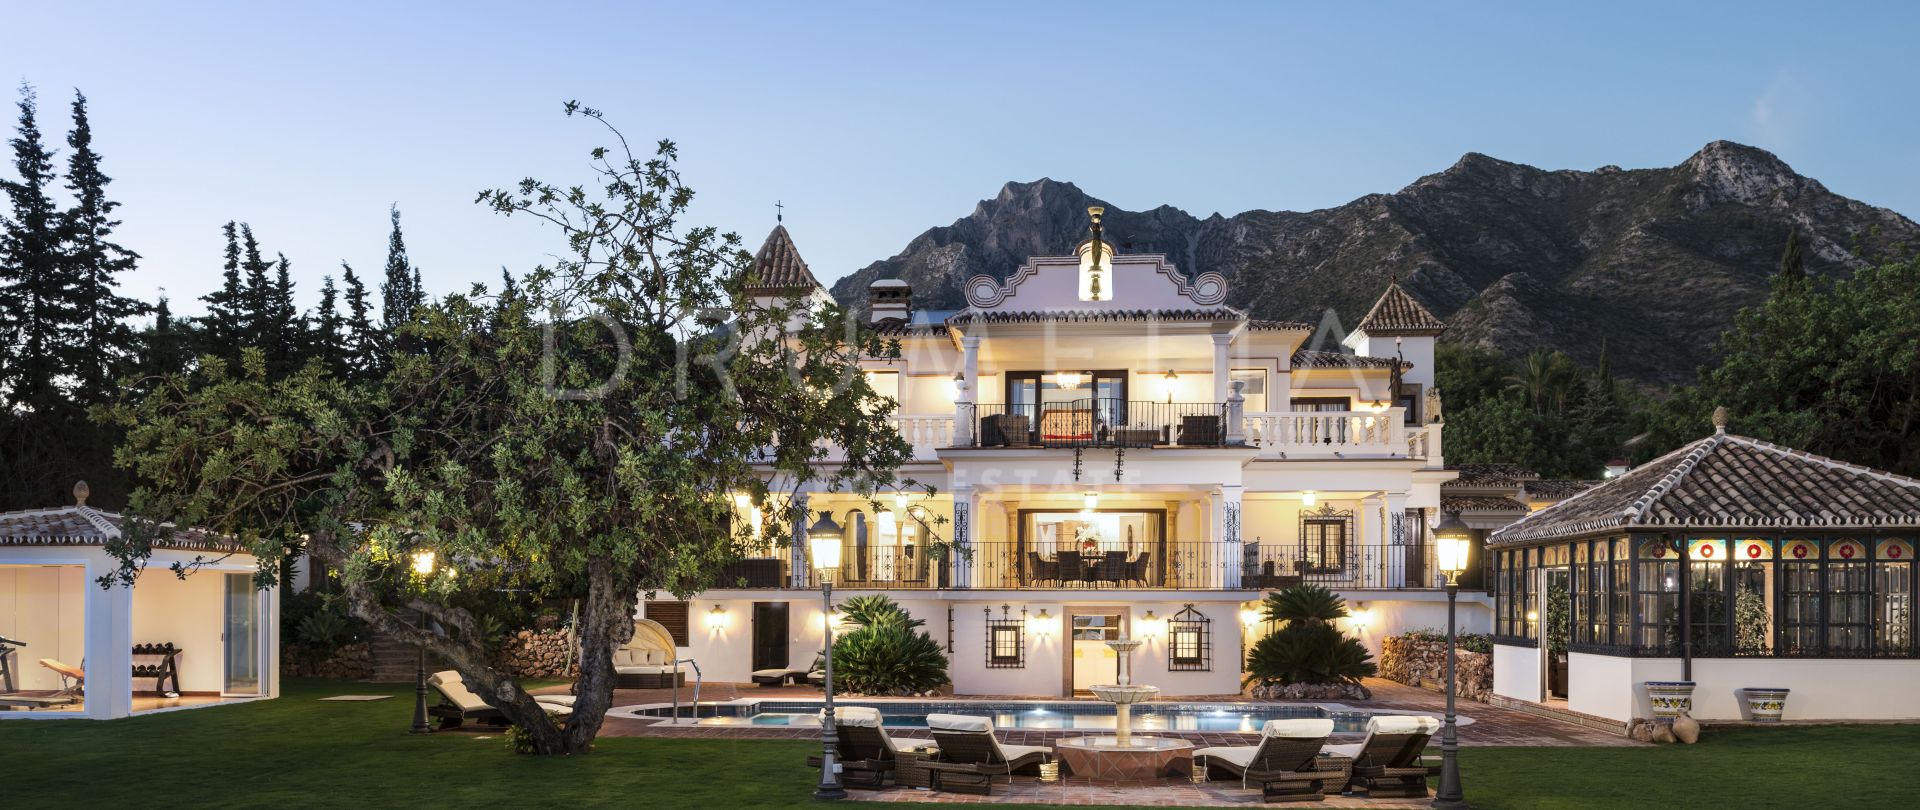 Extraordinaria mansión de lujo que combina futuro y pasado, Sierra Blanca, Milla de Oro de Marbella